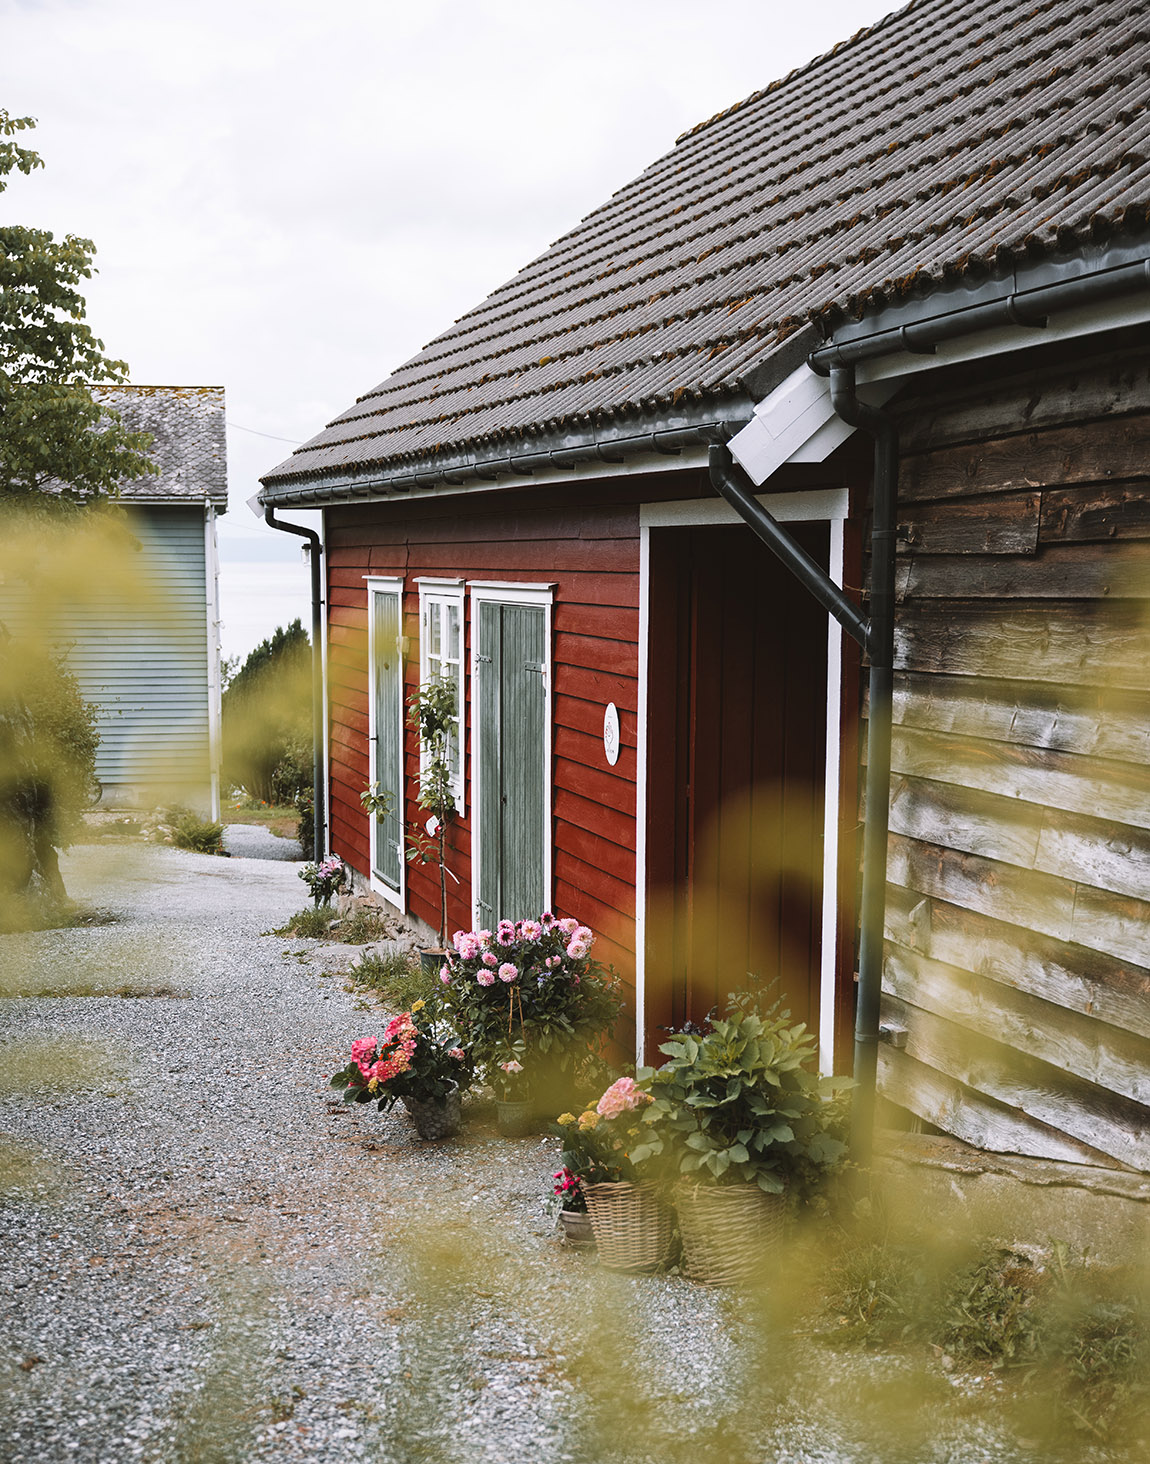 Aarvik Gard: A hidden haven in the Norwegian countryside